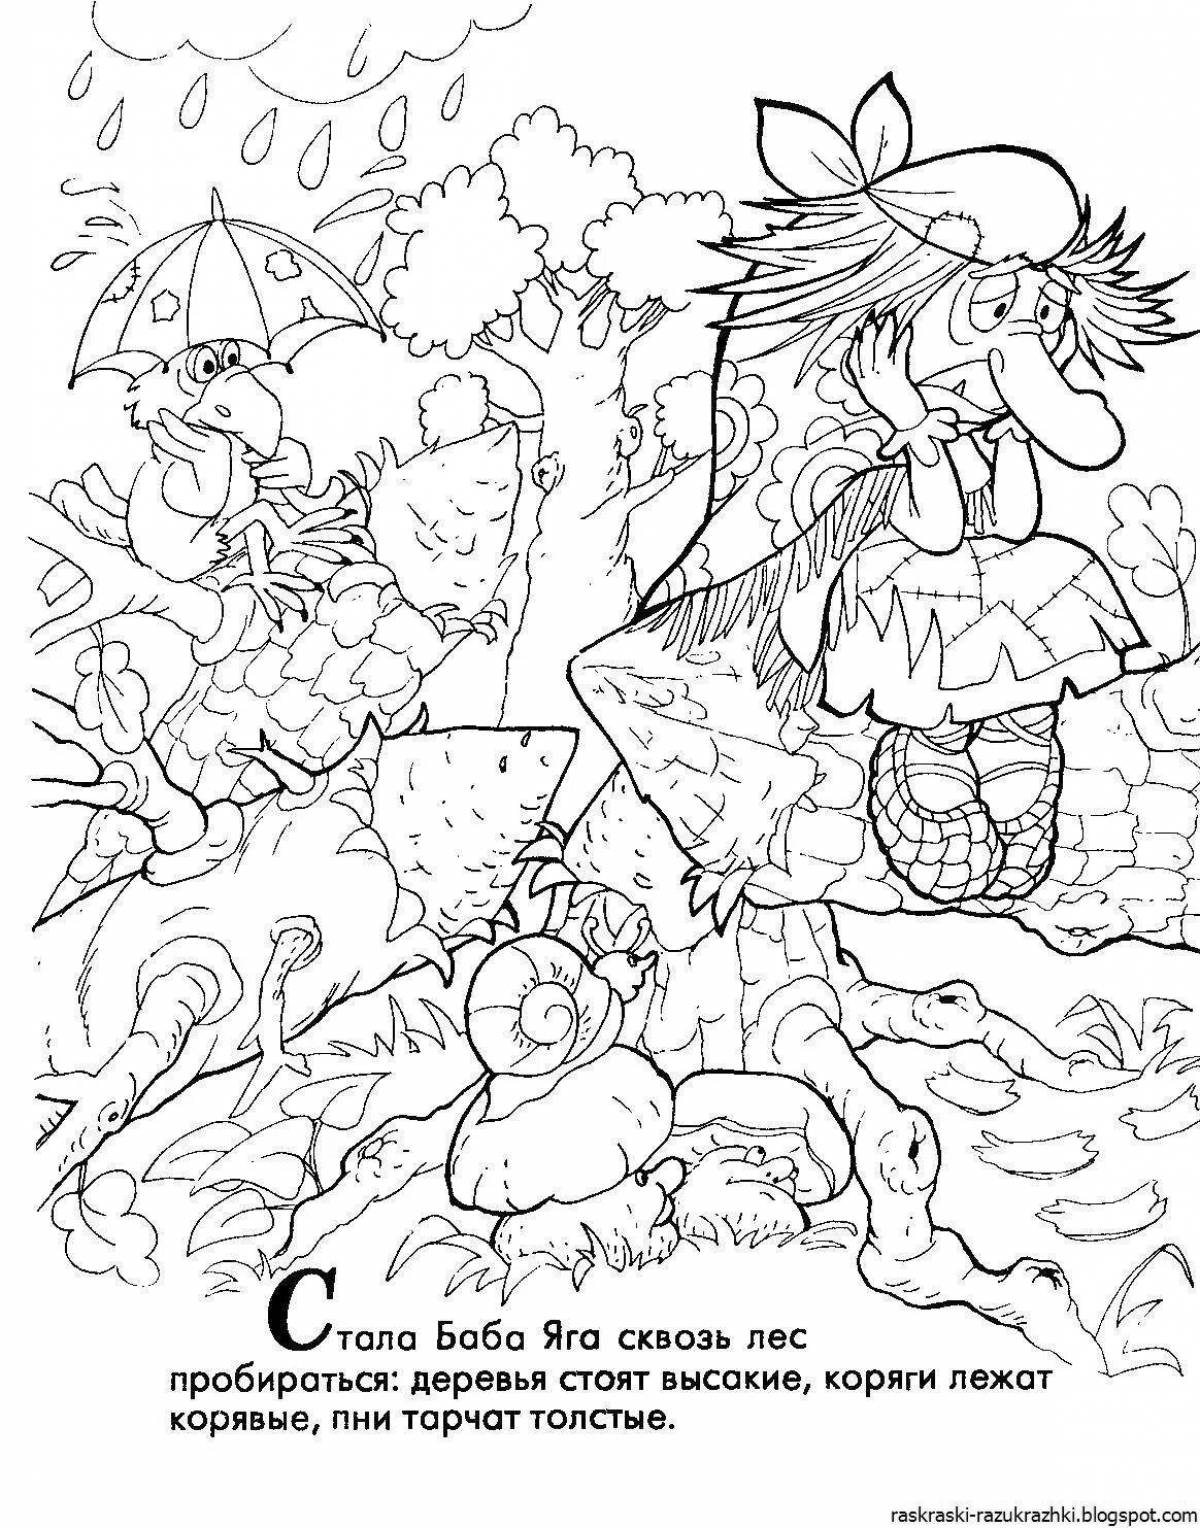 Great coloring book of baba yaga and goblin